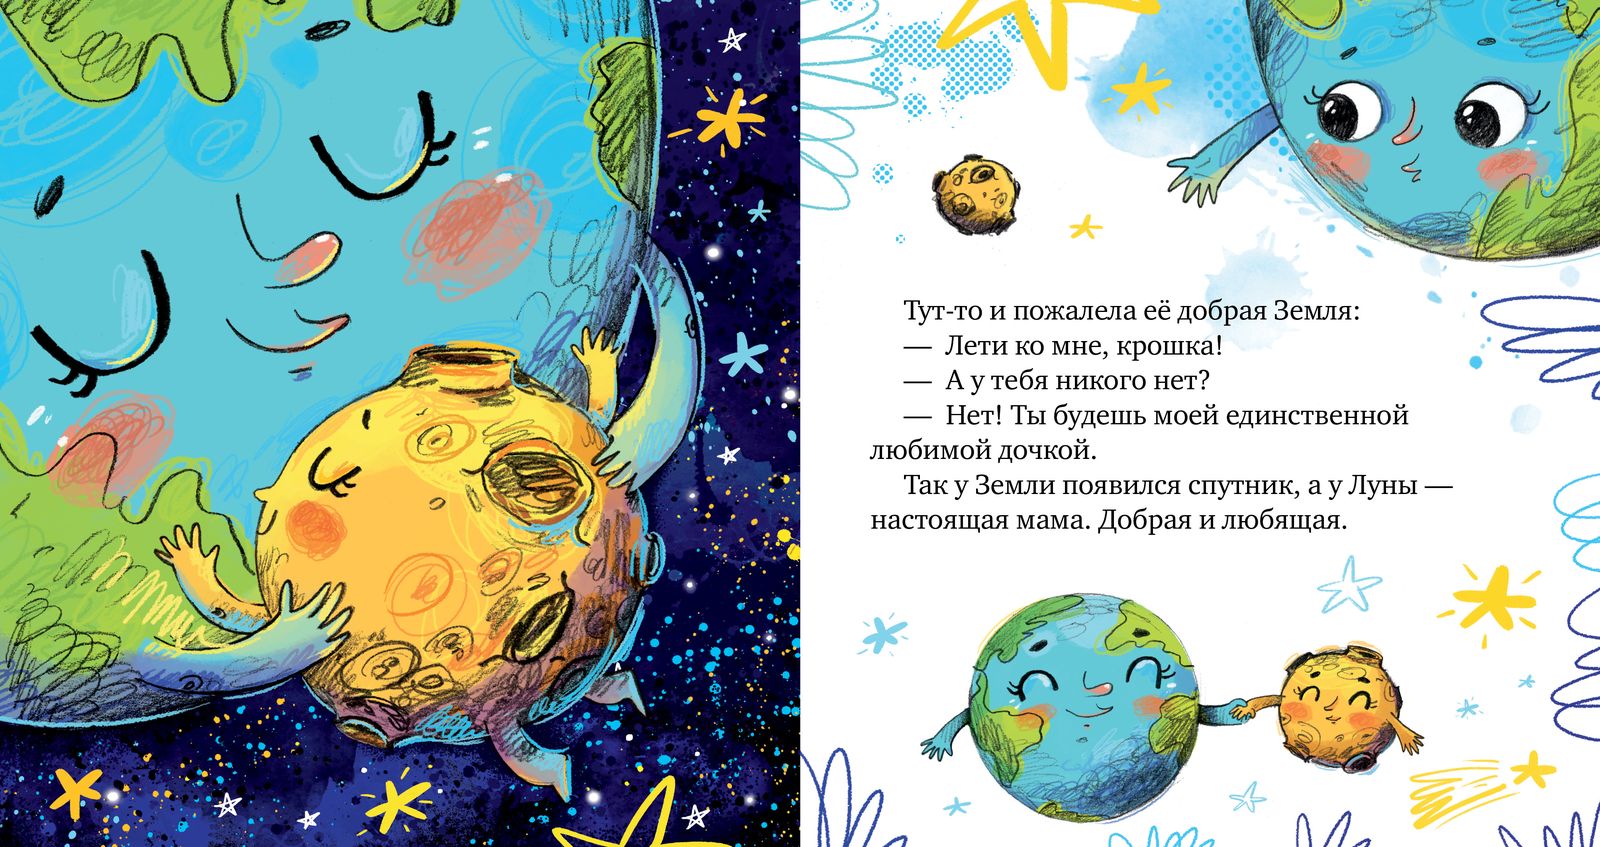 Сказка для детей на ночь - читаем малышу перед сном